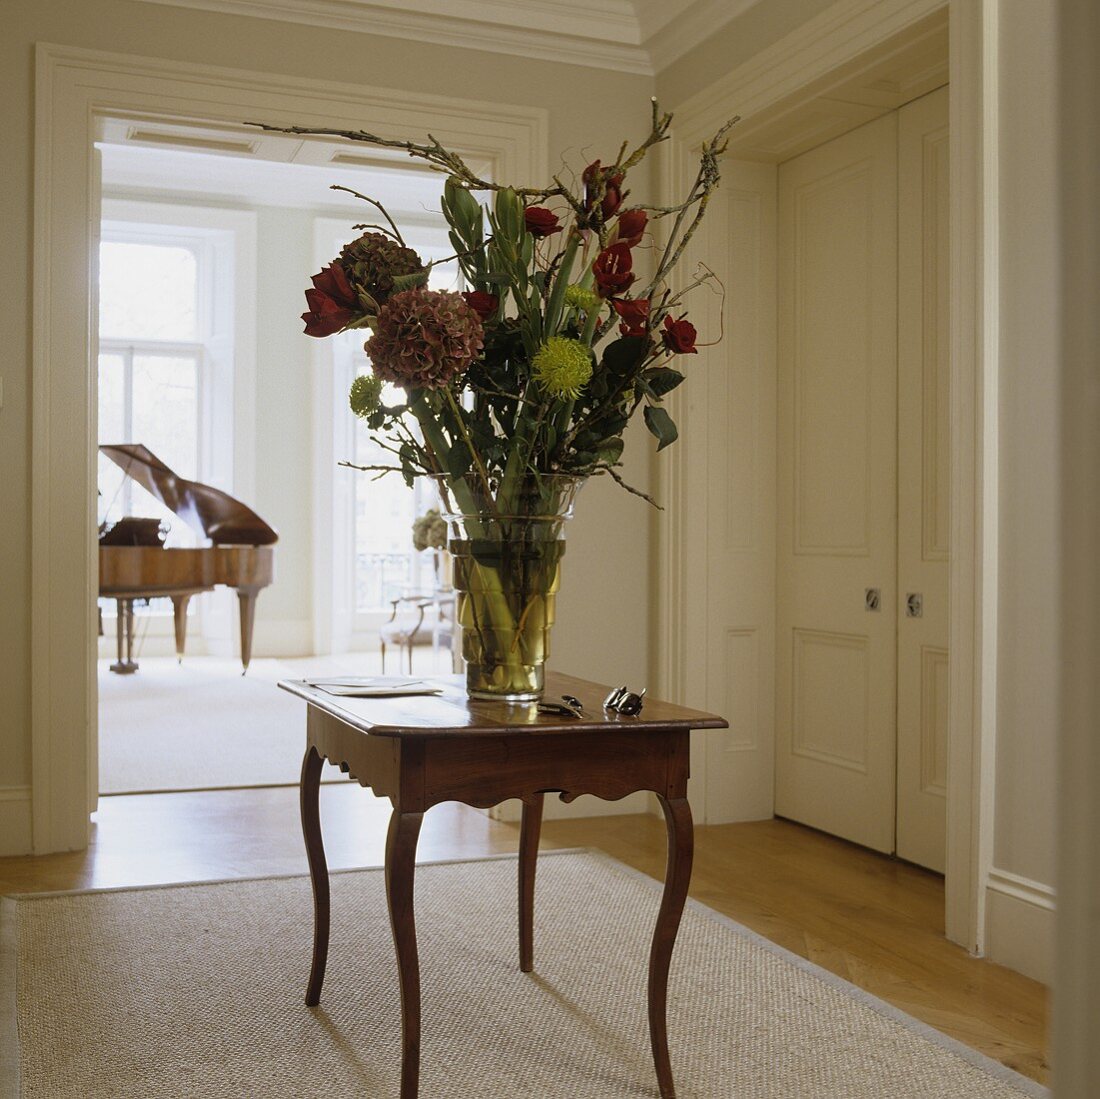 Beistelltisch im Rokokostil mit grossem Blumenstrauss im Vorraum mit Blick auf Klavier